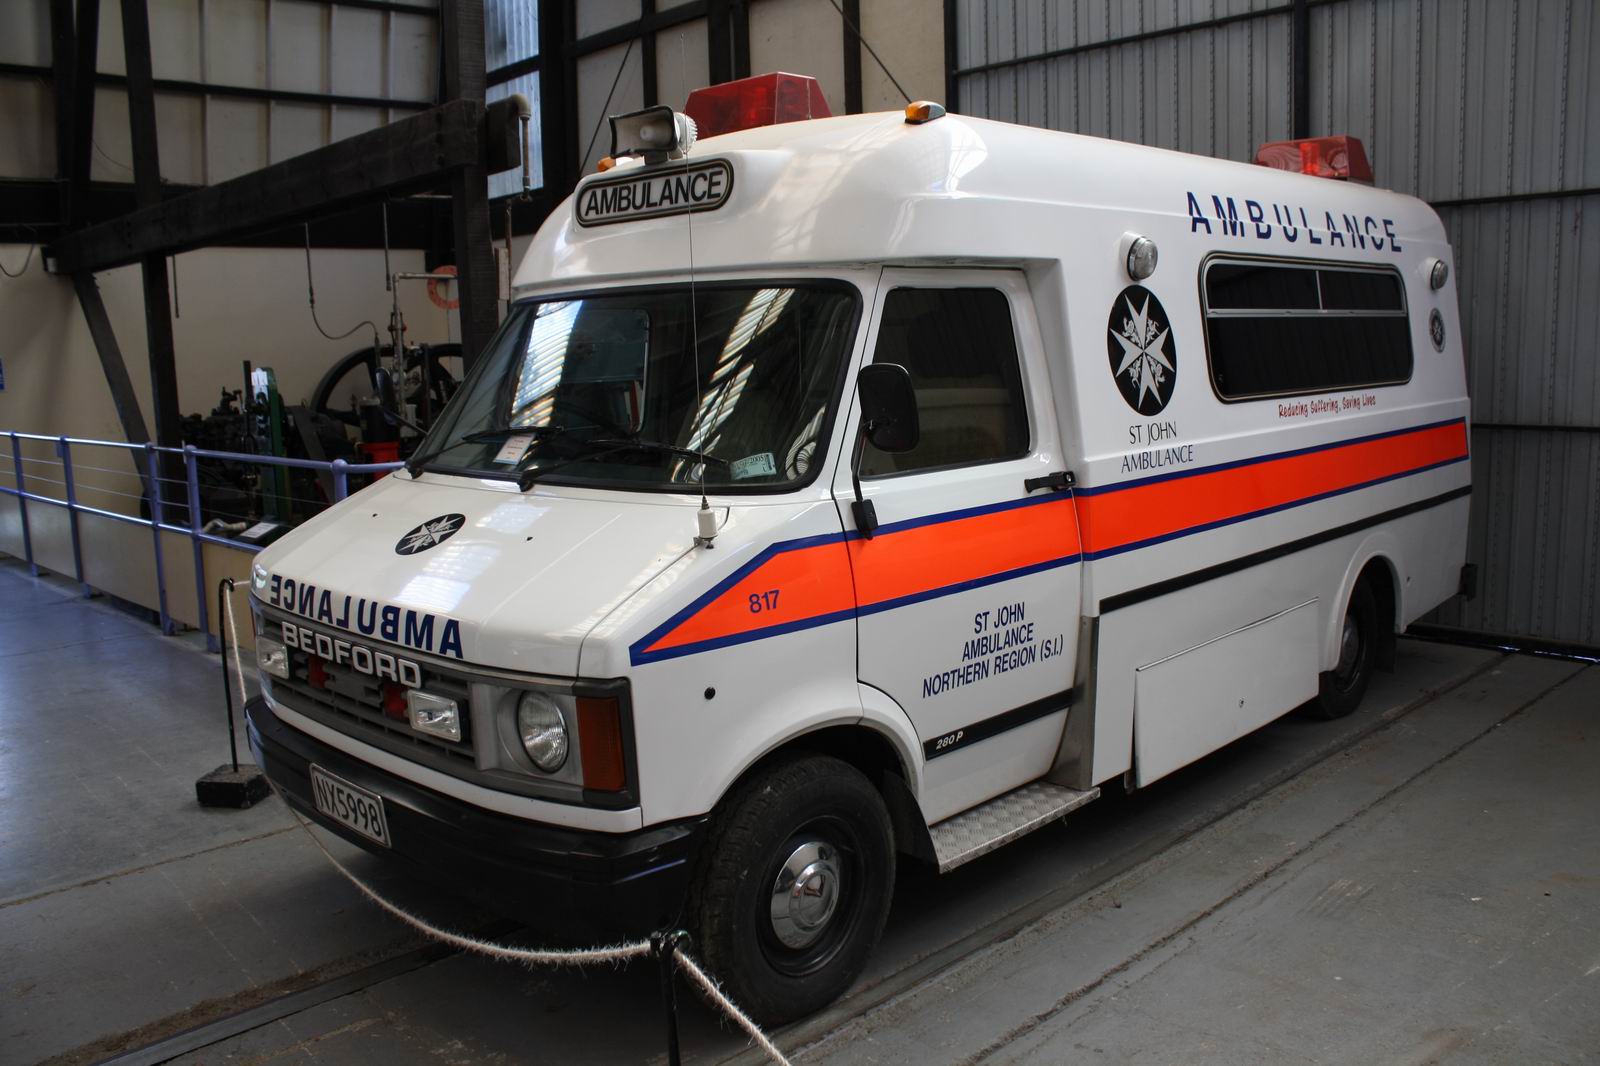 Ex. South Island Region Bedford Ambulances